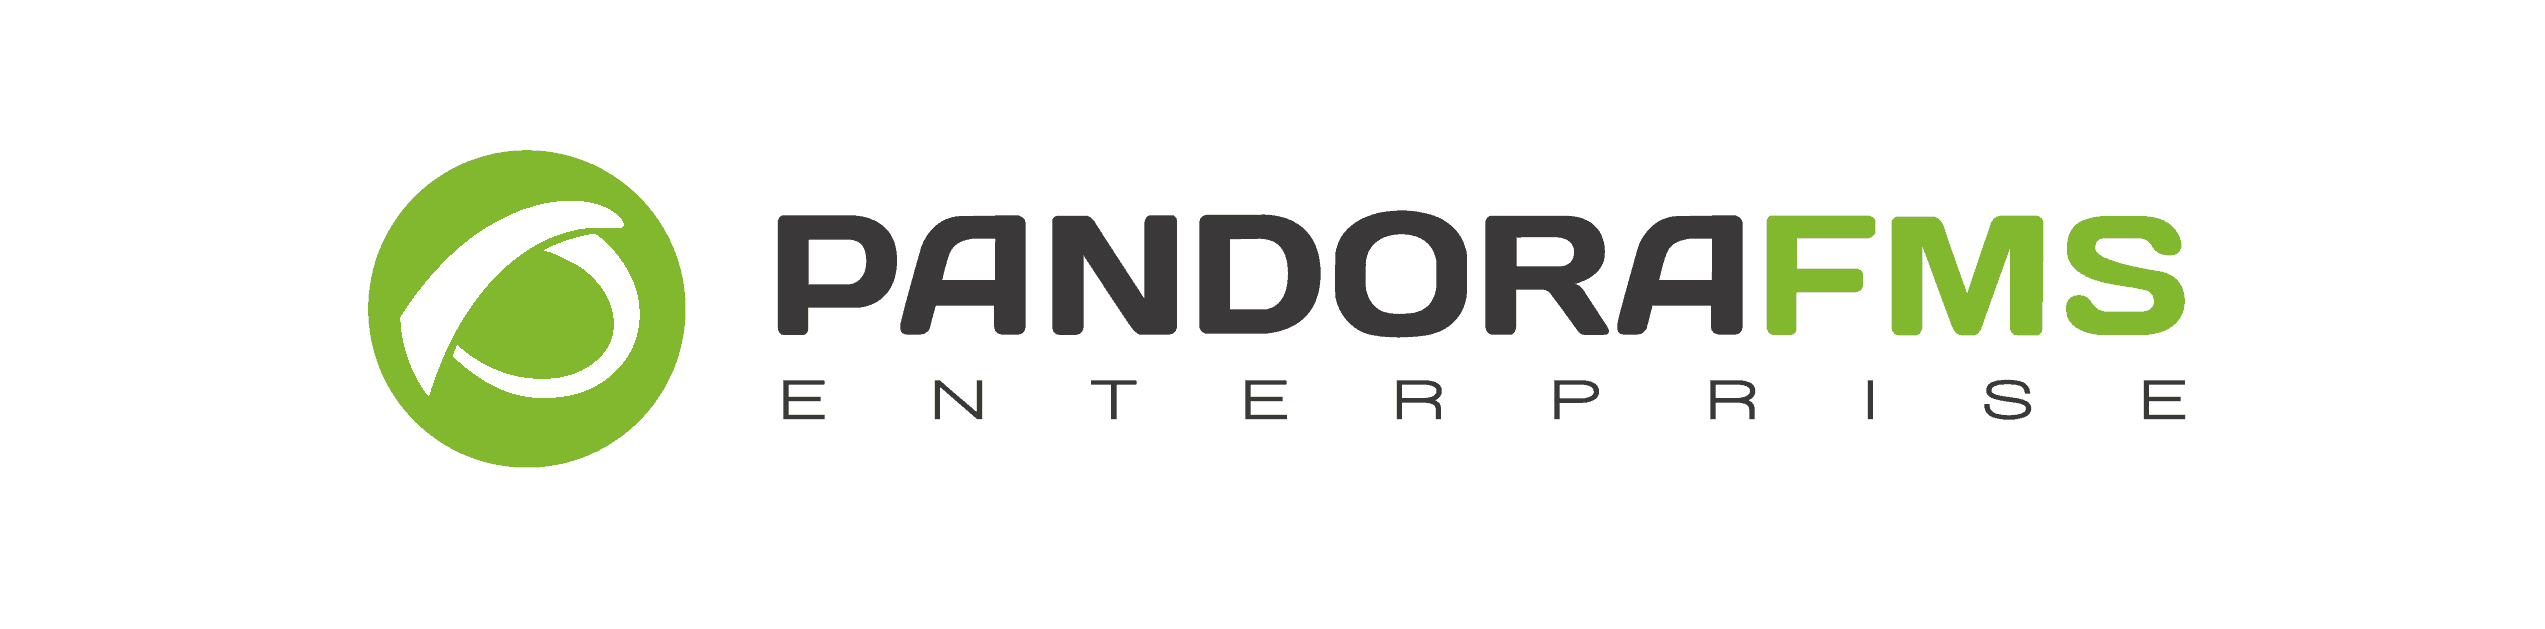 Pandora FMS Logo PNG Image in High Definition 2314x572 - Pandora Logo Png